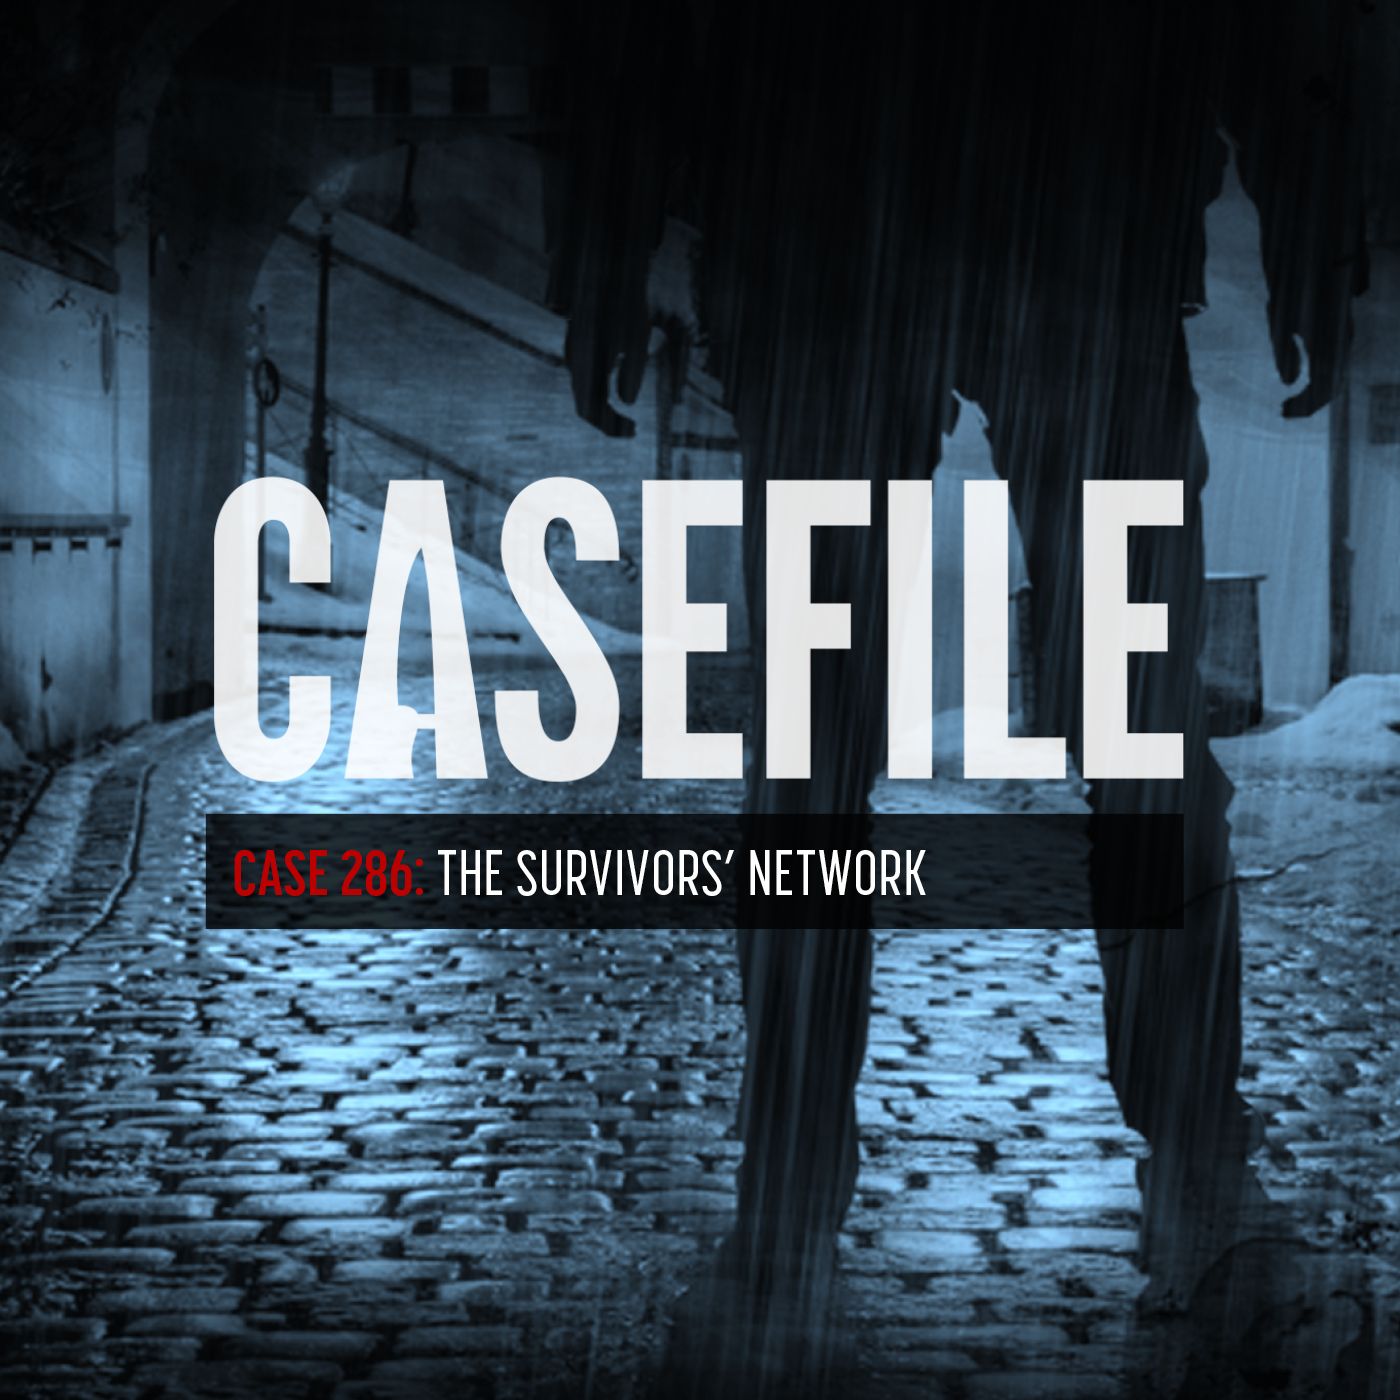 Case 286: The Survivors' Network